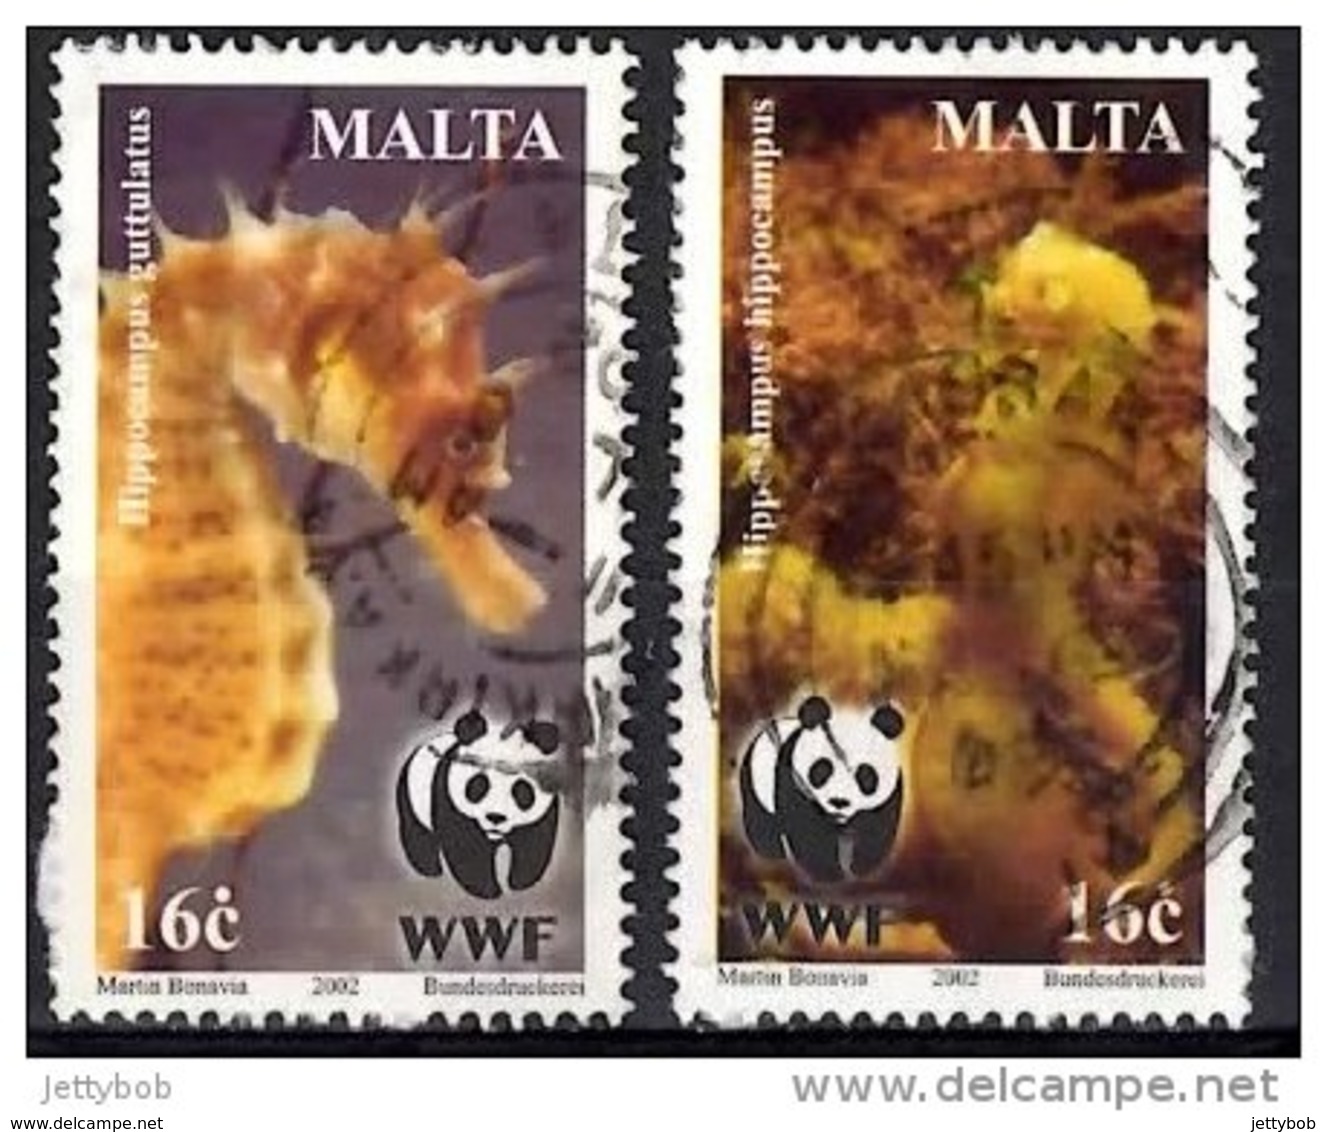 MALTA 2002 Endangered Species 6c, 16c Used - Malta